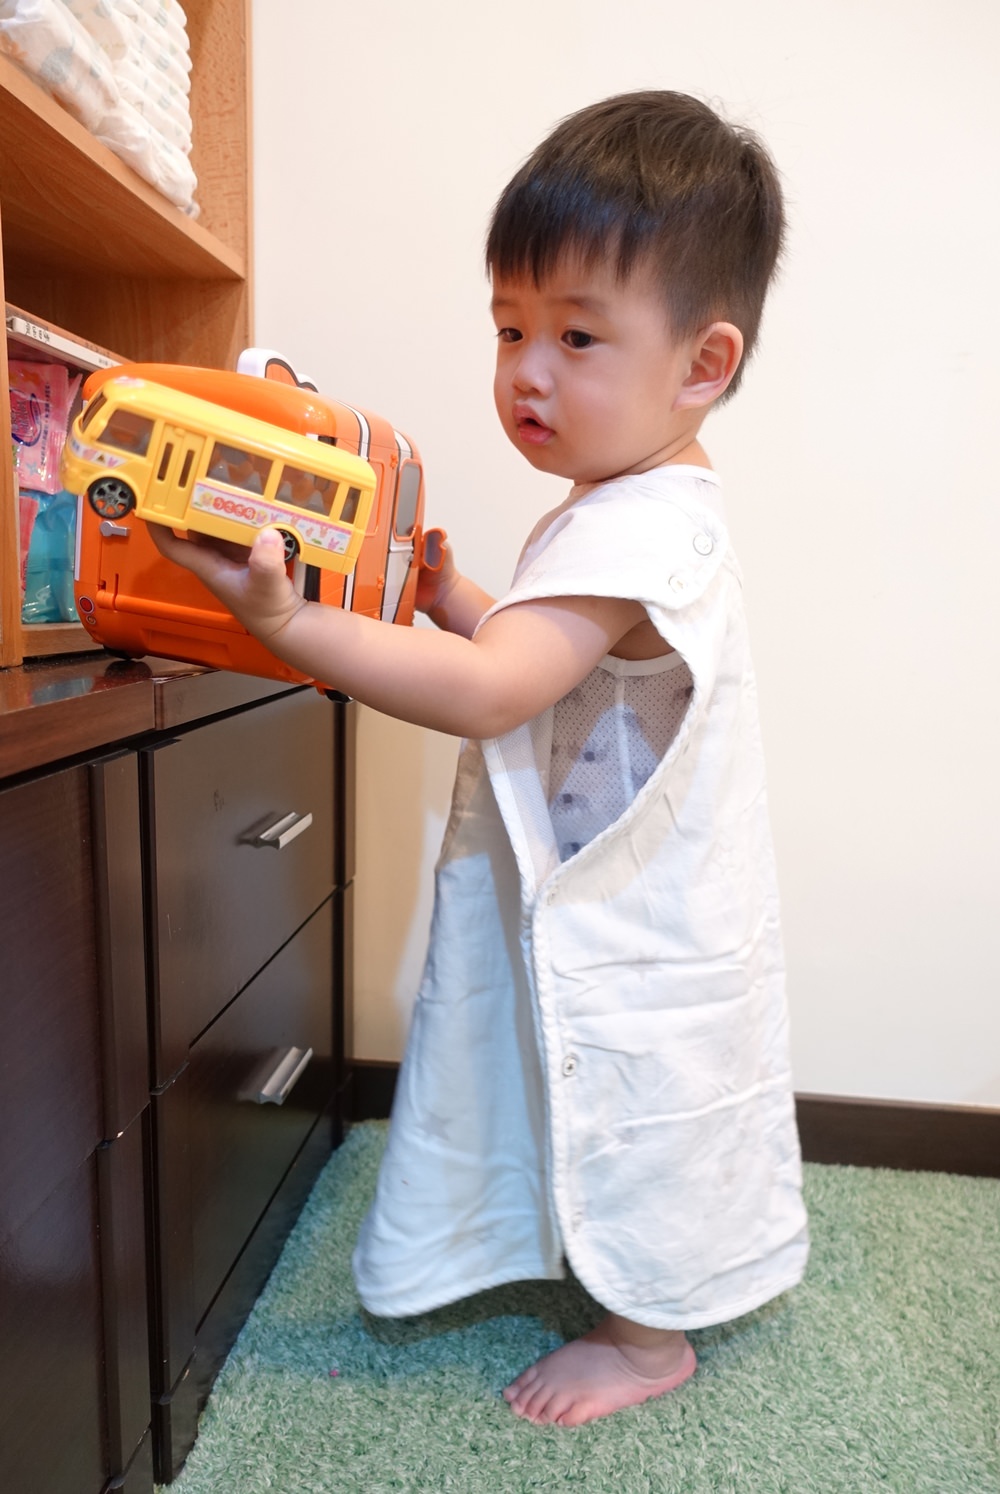 【育兒好物】日本Hoppetta防踢被&成長型睡褲~覺得每個寶寶都該有一件的夢幻防踢被